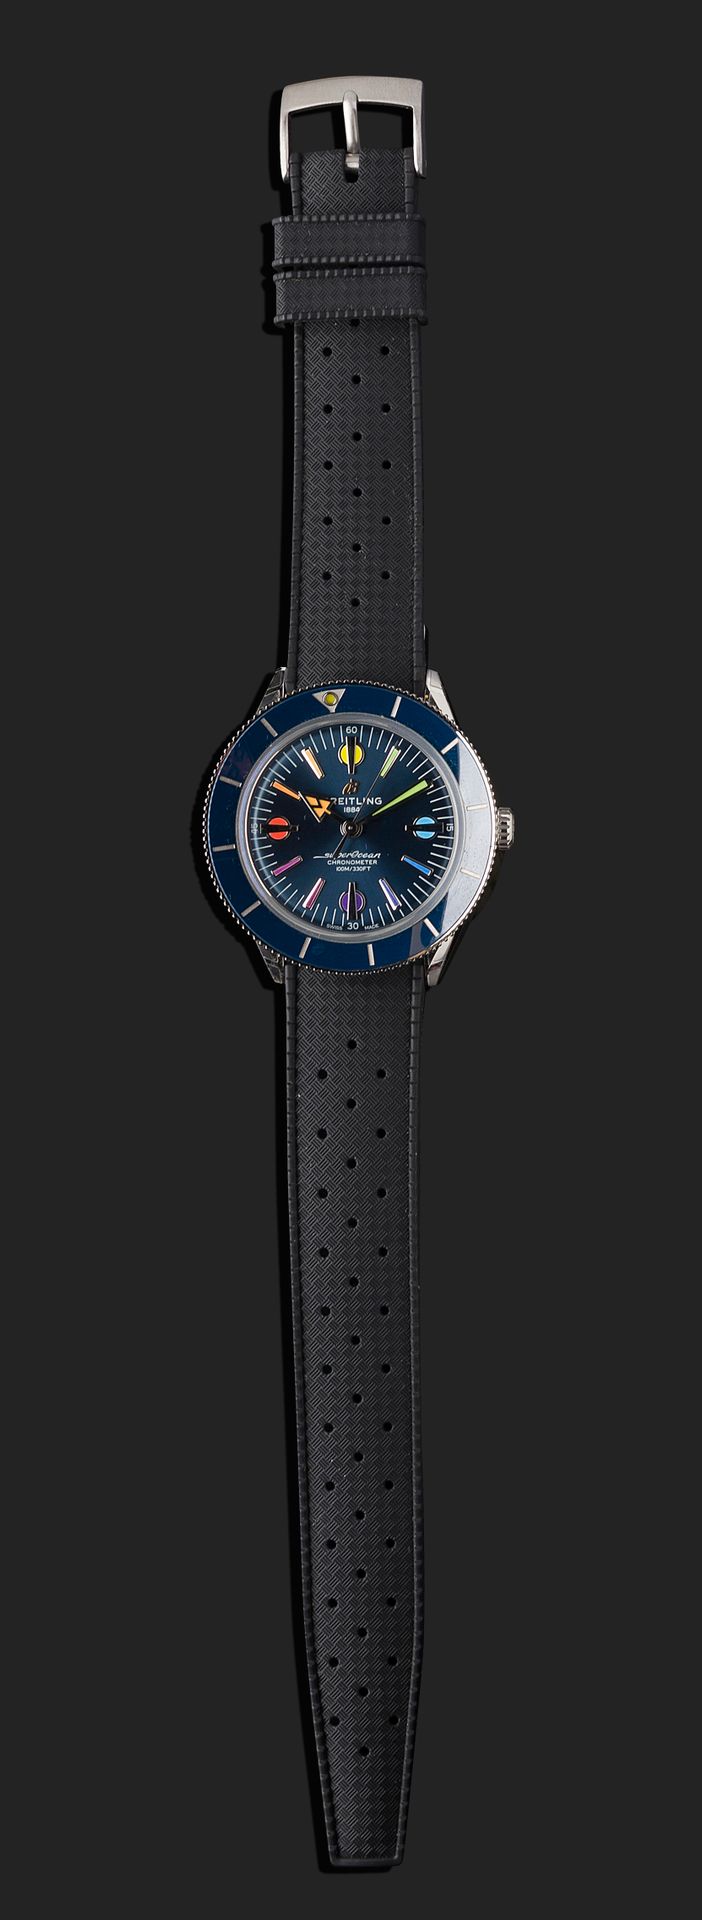 Null 布雷特林
Super Ocean Heritage 57，编号6286357。
精钢潜水员腕表。
圆形表壳，蓝色旋转表圈。
蓝色表盘上有应用彩虹标记。&hellip;